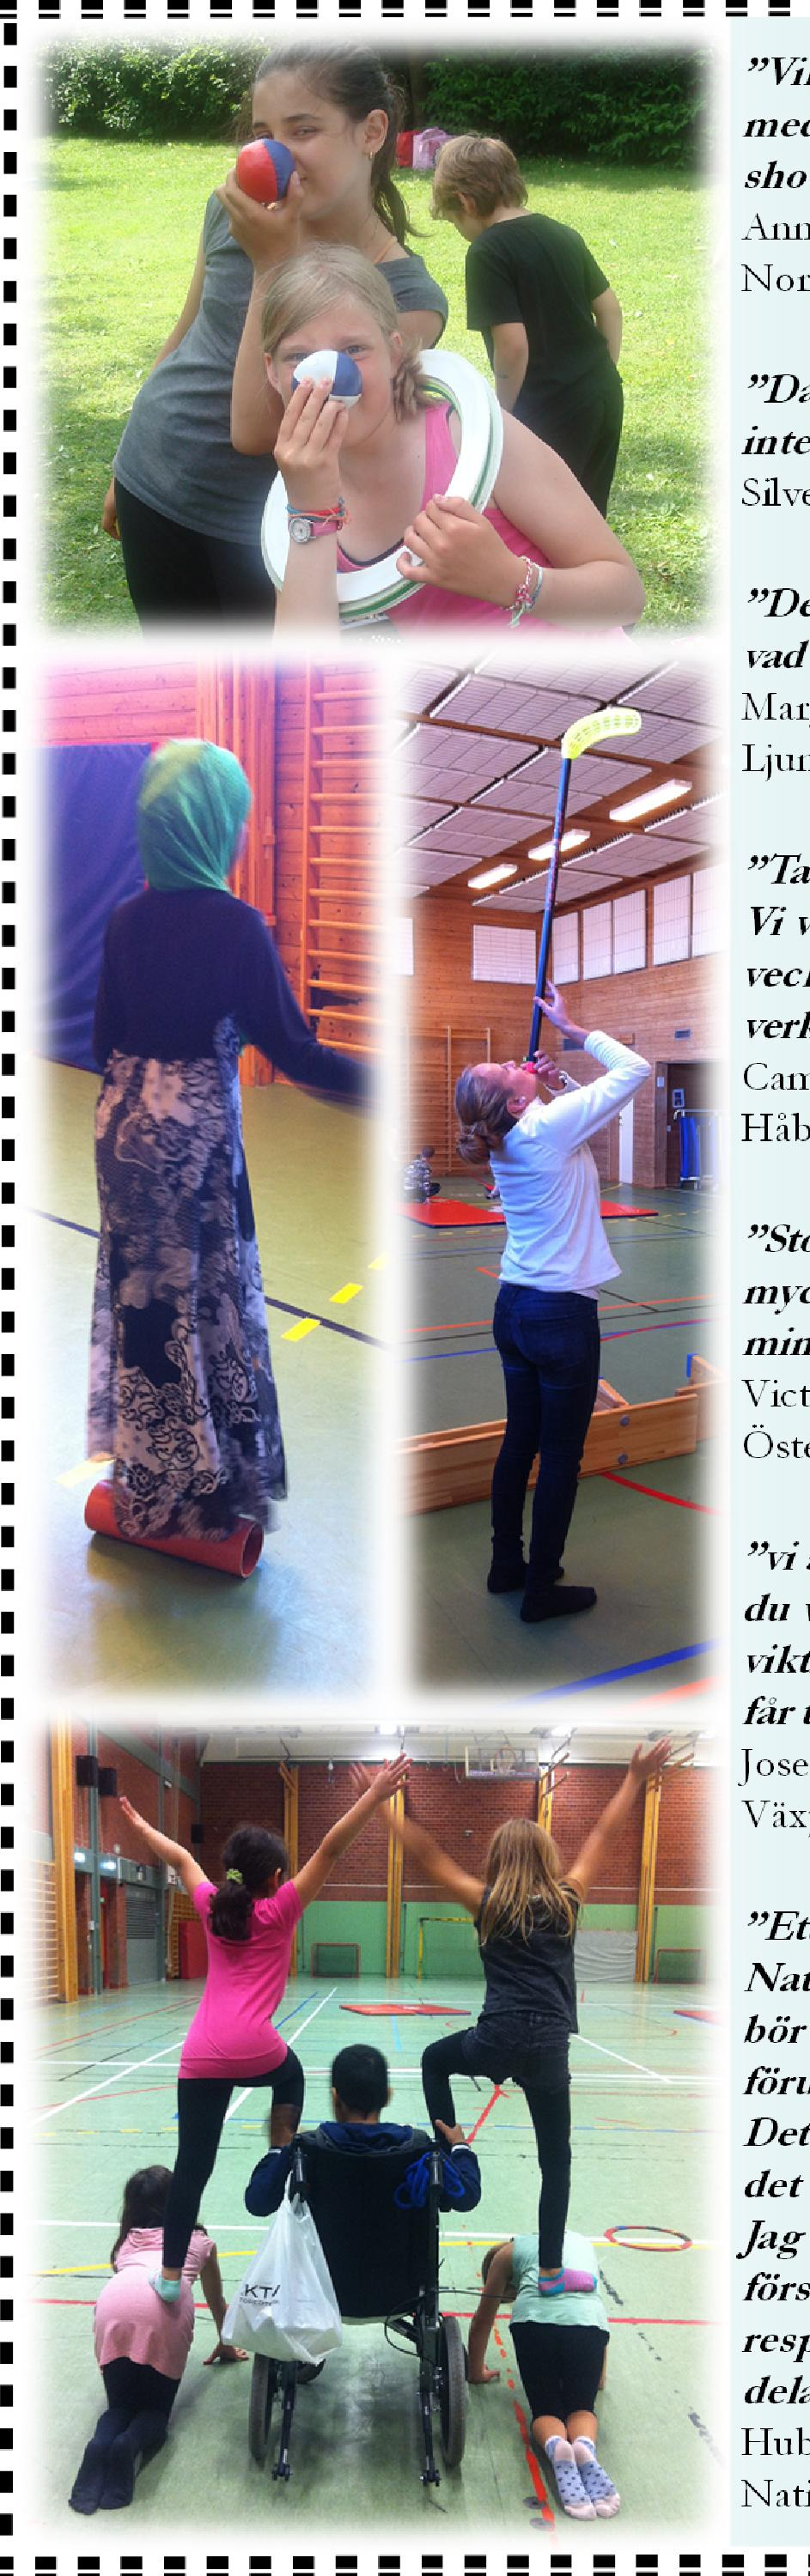 Dagens ros till Marcus Bertilsson som gjort ett otroligt, intensivt och bra cirkusarbete med våra elever, vi är helnöjda. Silverdansens skola, Norrköpings kommun. 2016-06-01.